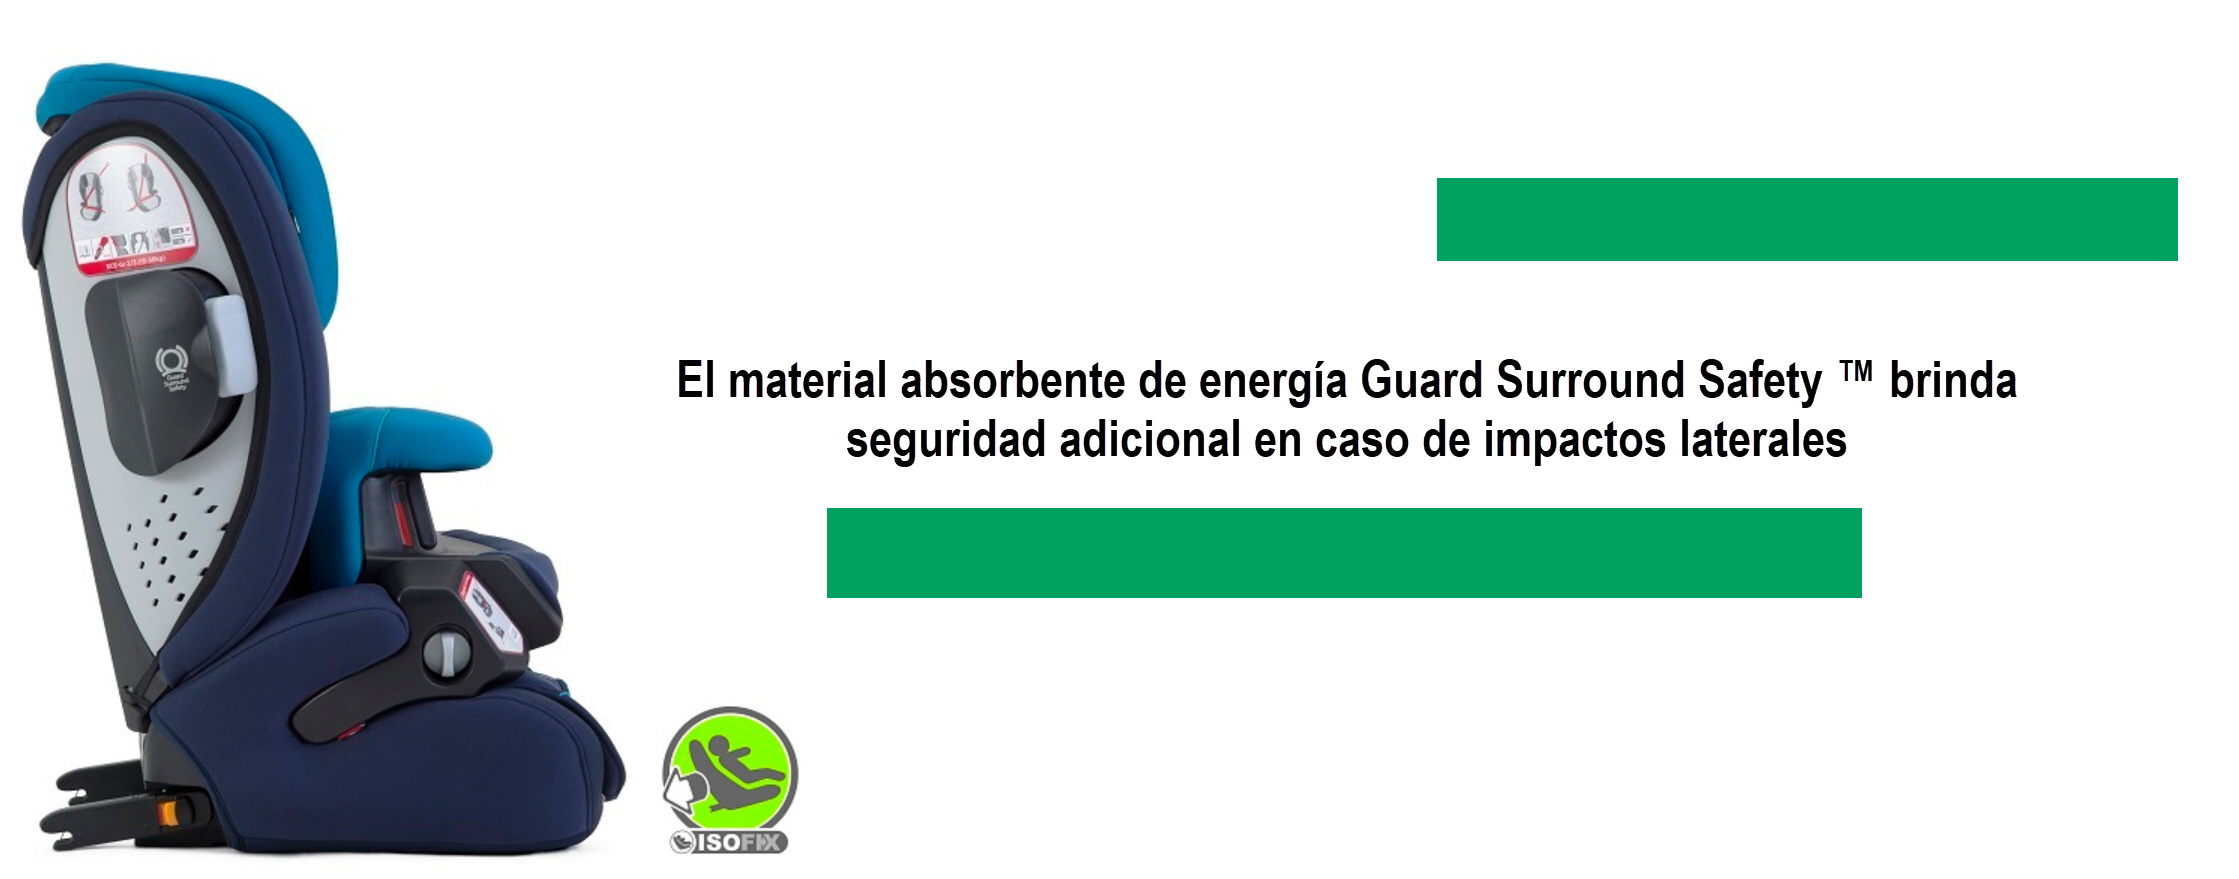 El material absorbente de energía Guard Surround Safety brinda seguridad adicional